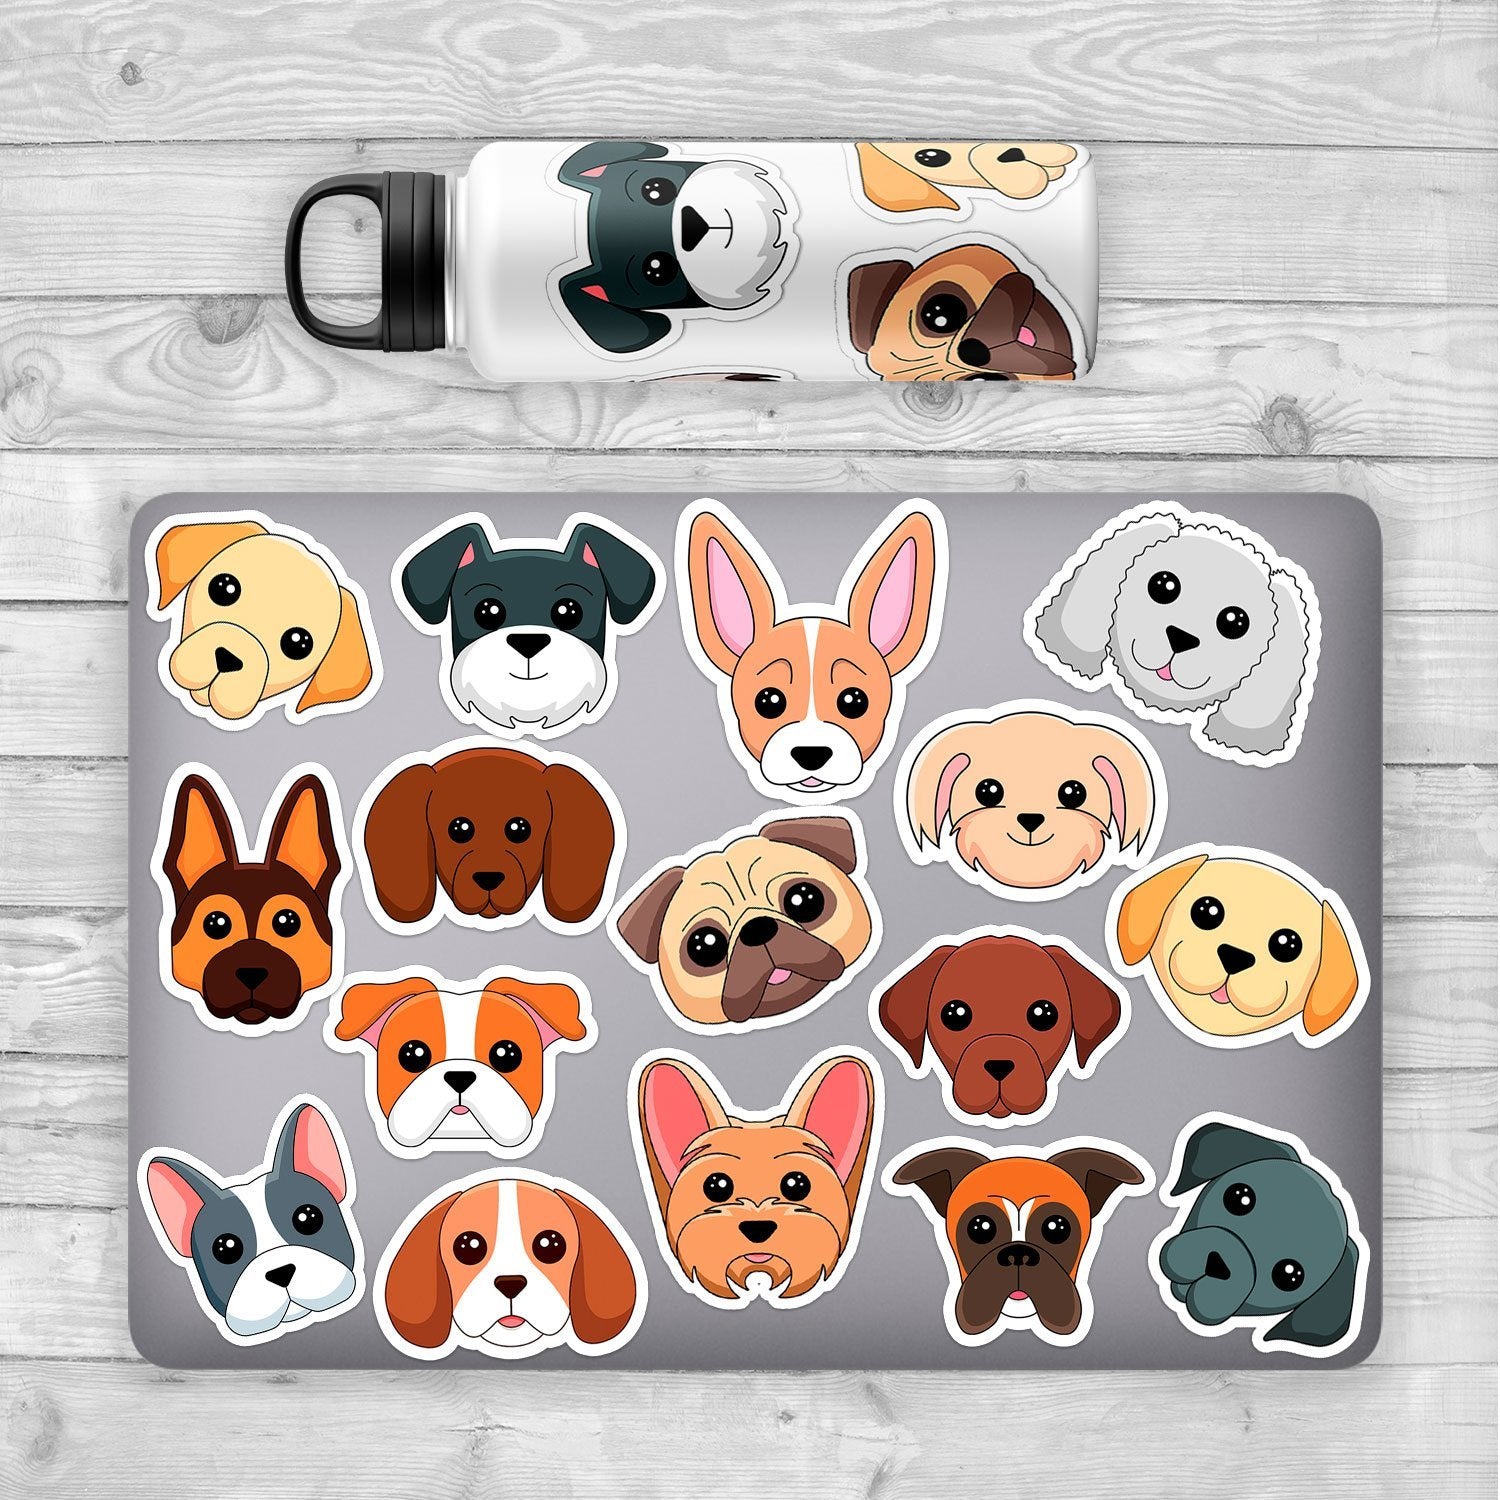 Bulldog Sticker - Dogstickers.co